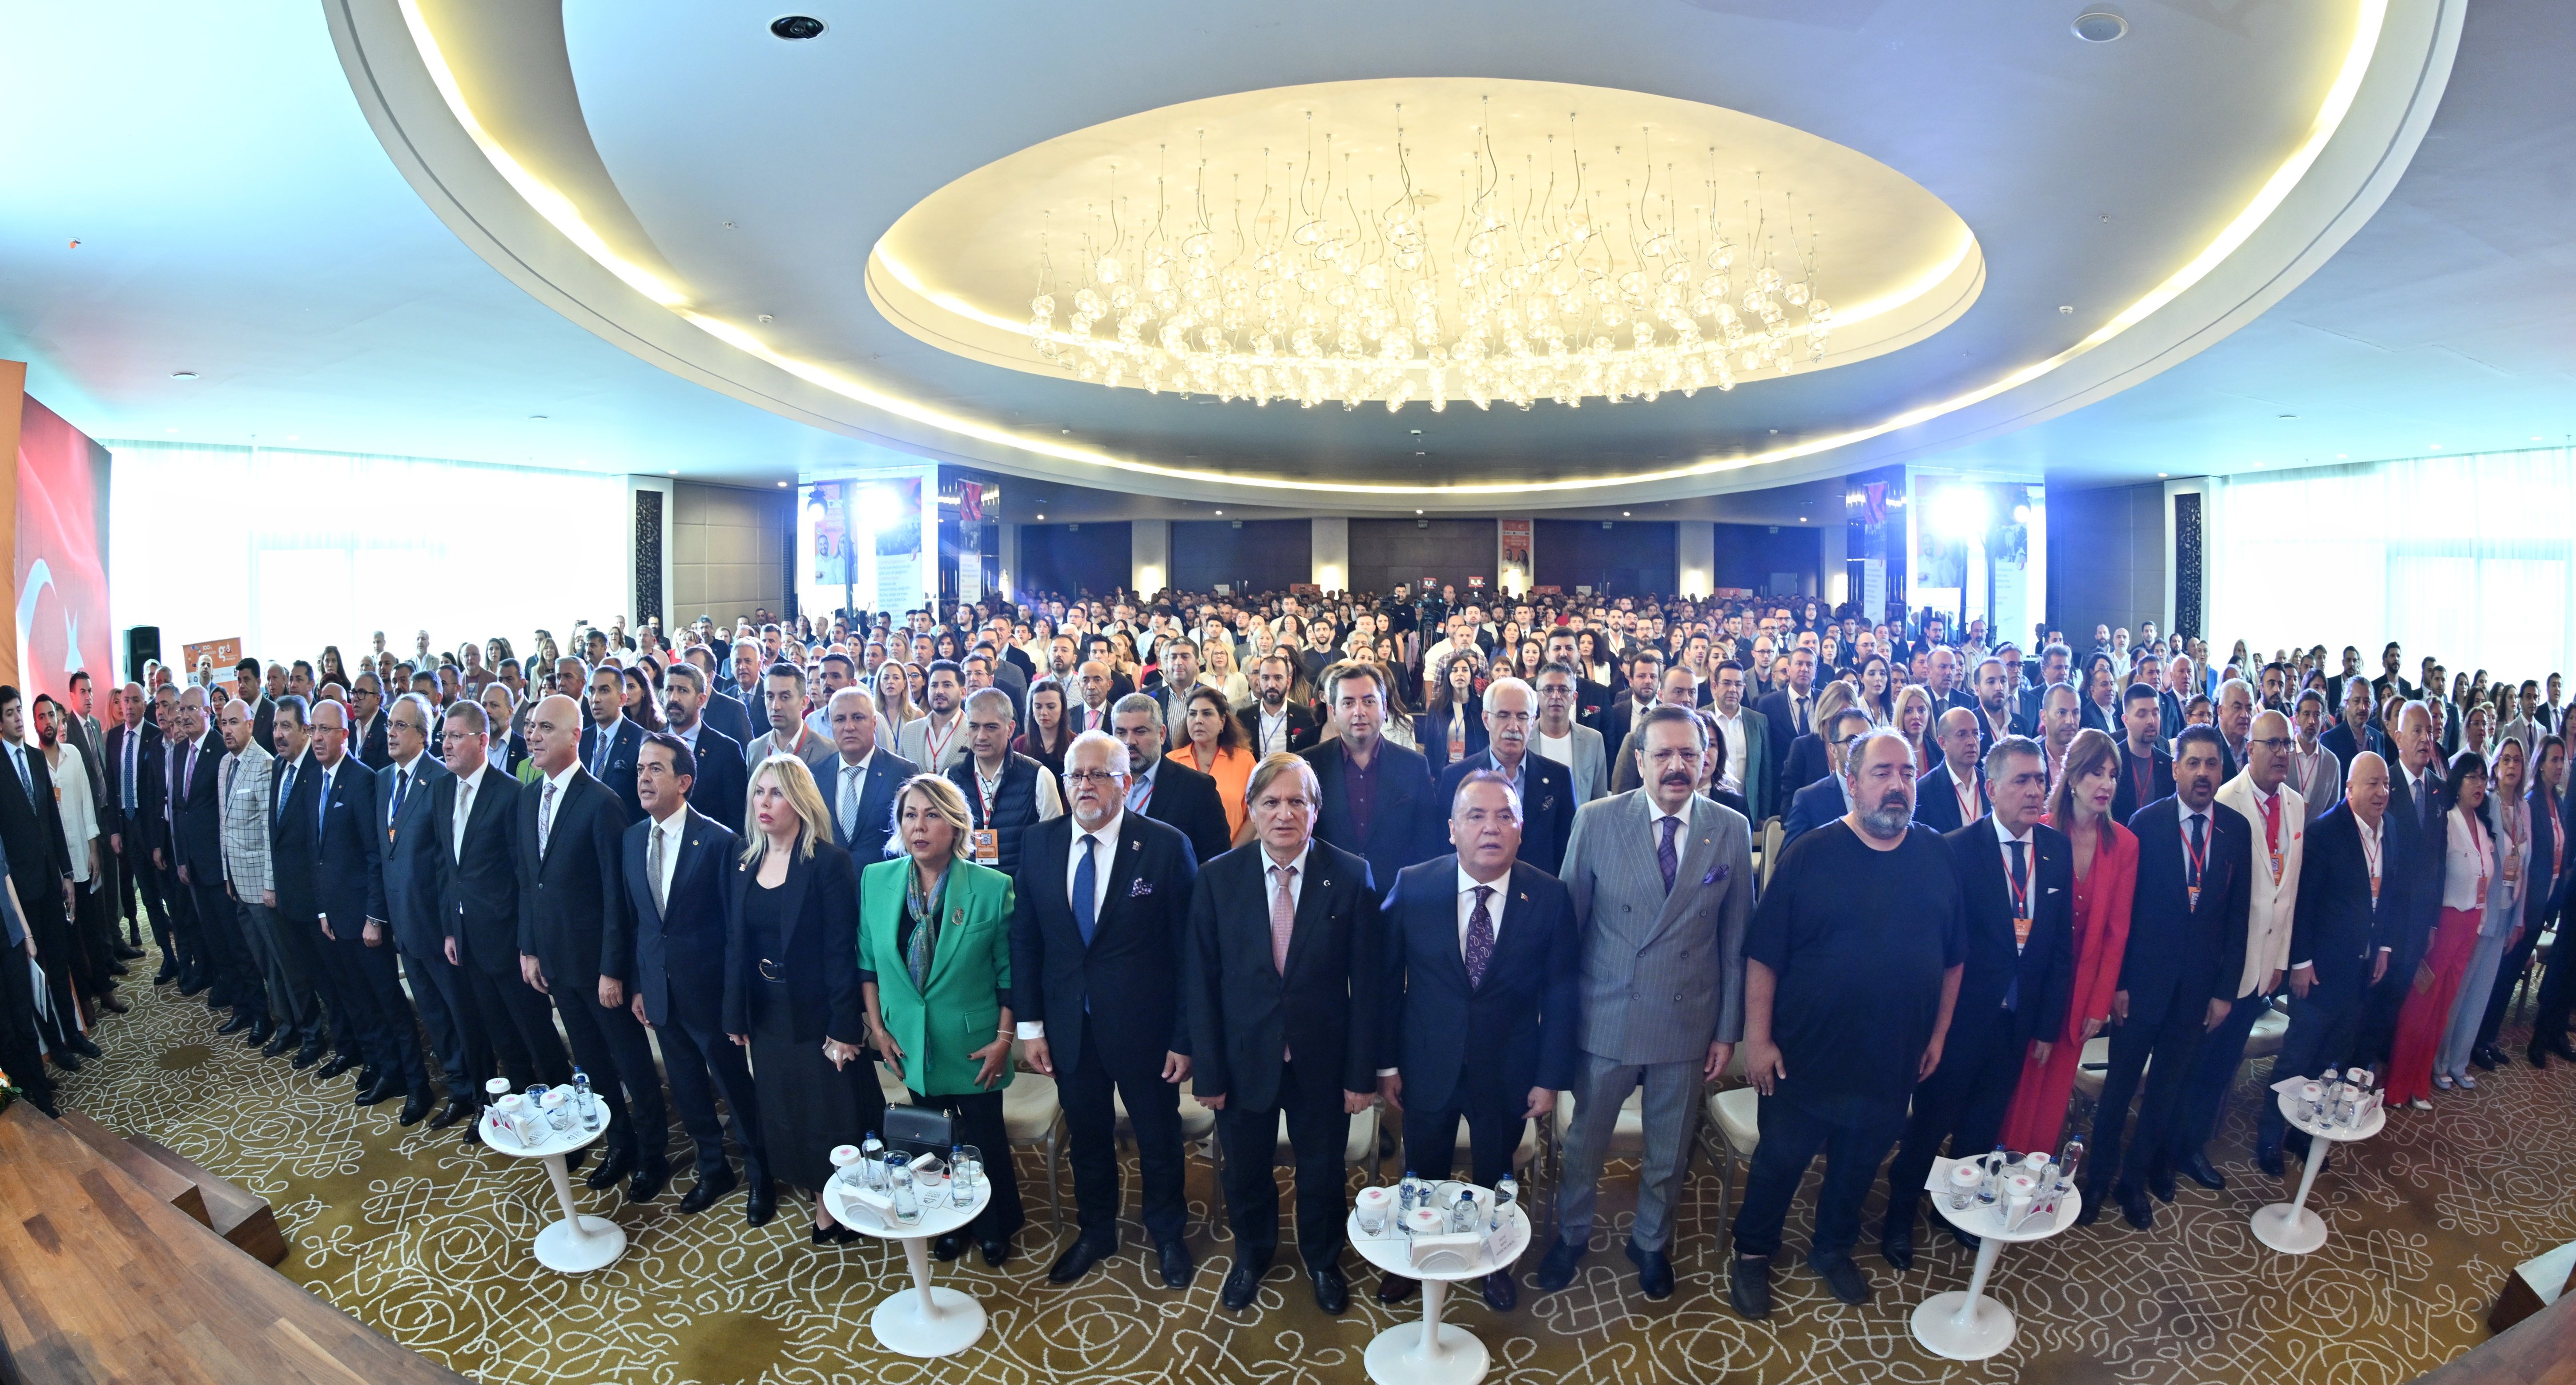 TOBB Yönetim Kurulu Üyesi ve Odamız Başkanı Hakan ÜLKEN, Antalya’da gerçekleştirilen “100. Yıl G3 Girişimcilik Zirvesi” ne katılım sağladı.